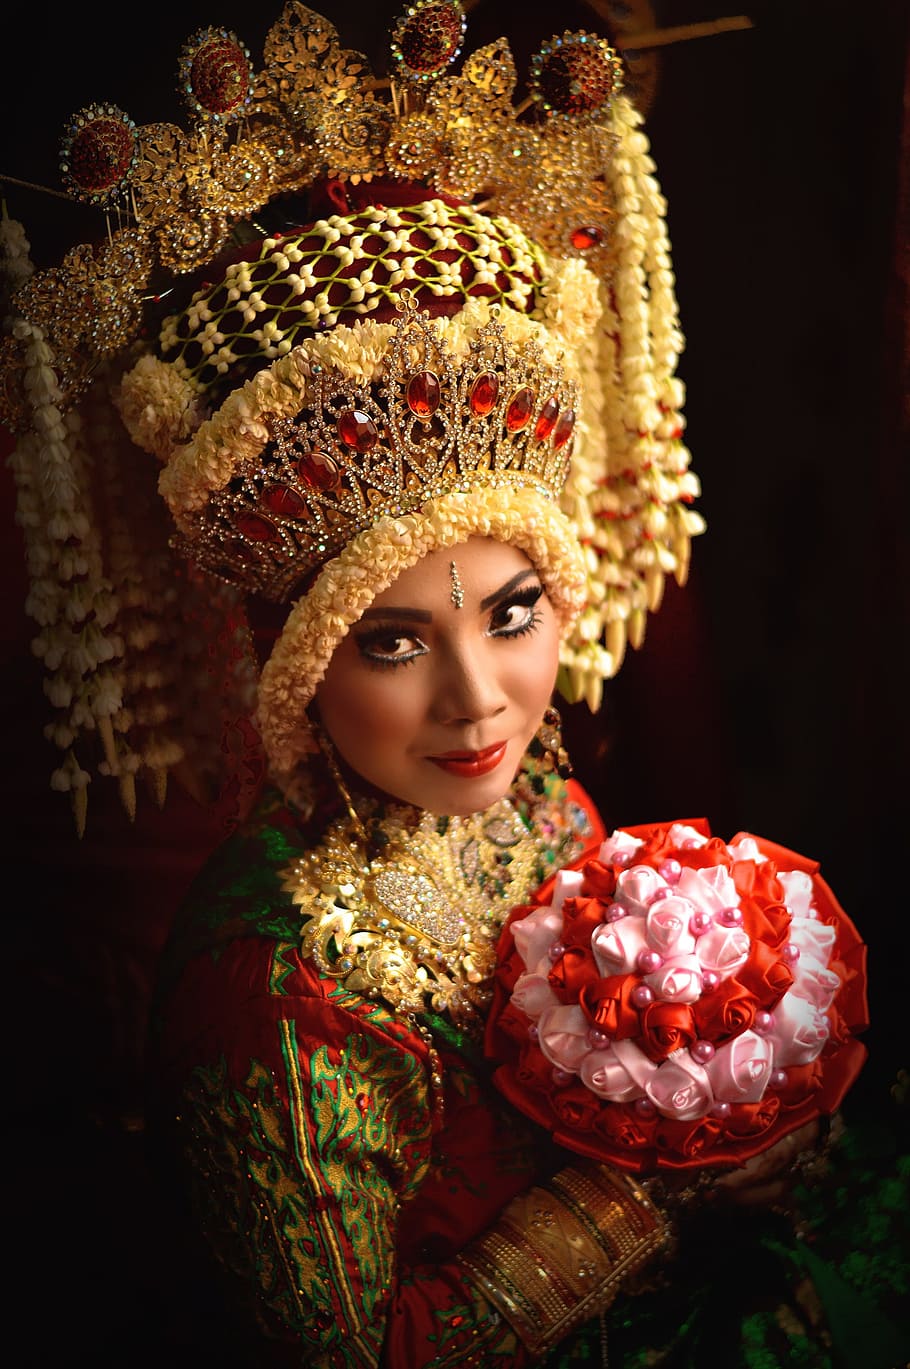 wanita, hijau, merah, bunga, lengan panjang, atas, budaya, aceh, indonesia, pernikahan